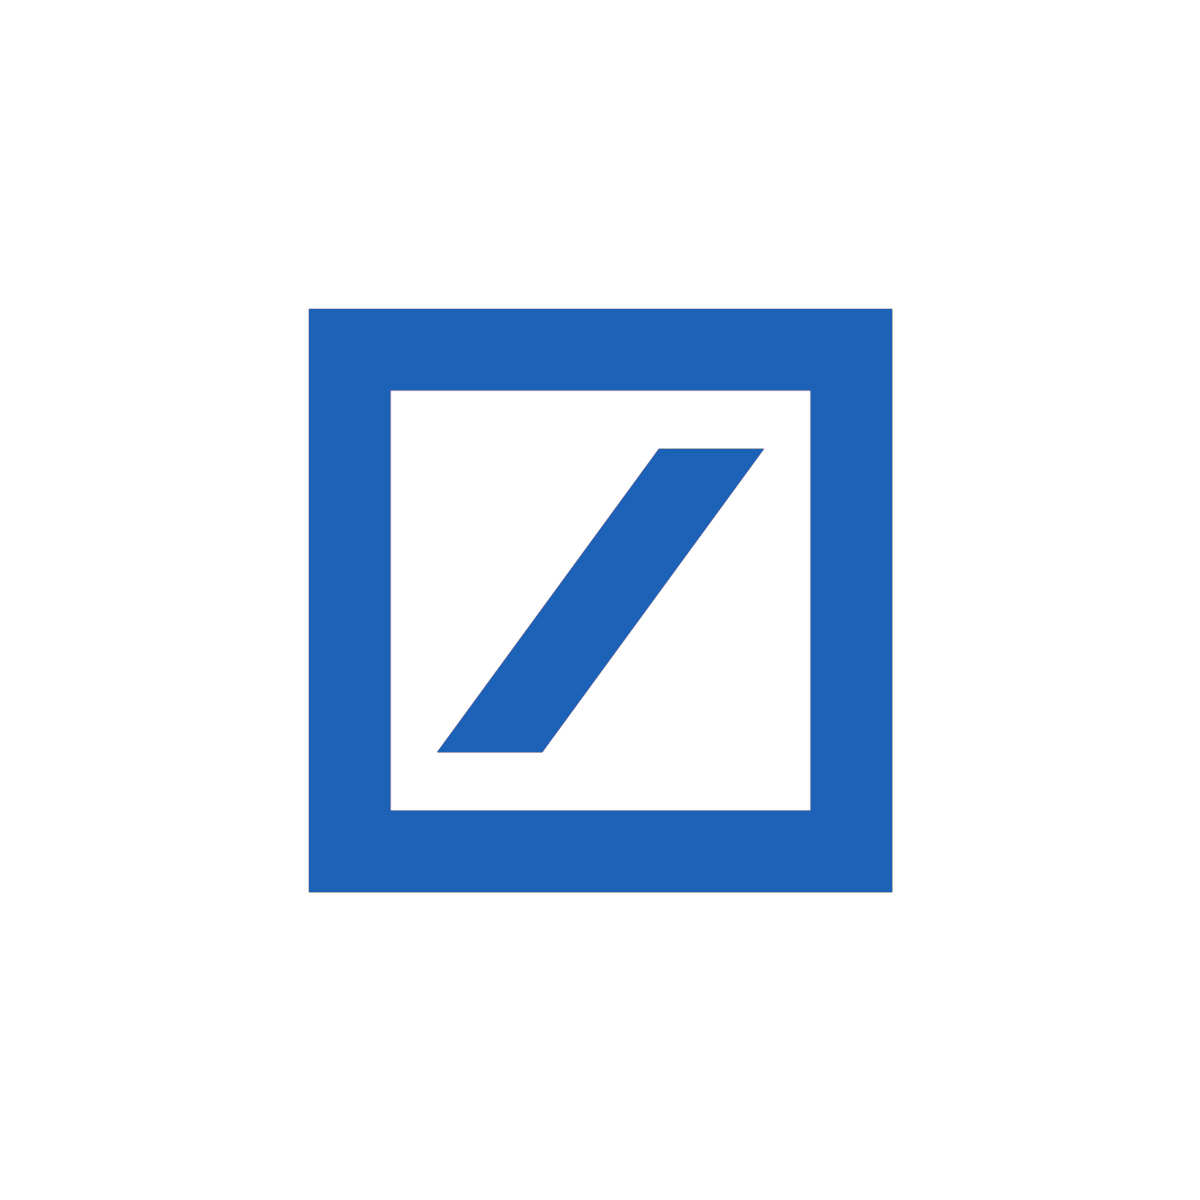 Deutsche Bank Logo designed by Anton Stankowski, 1972